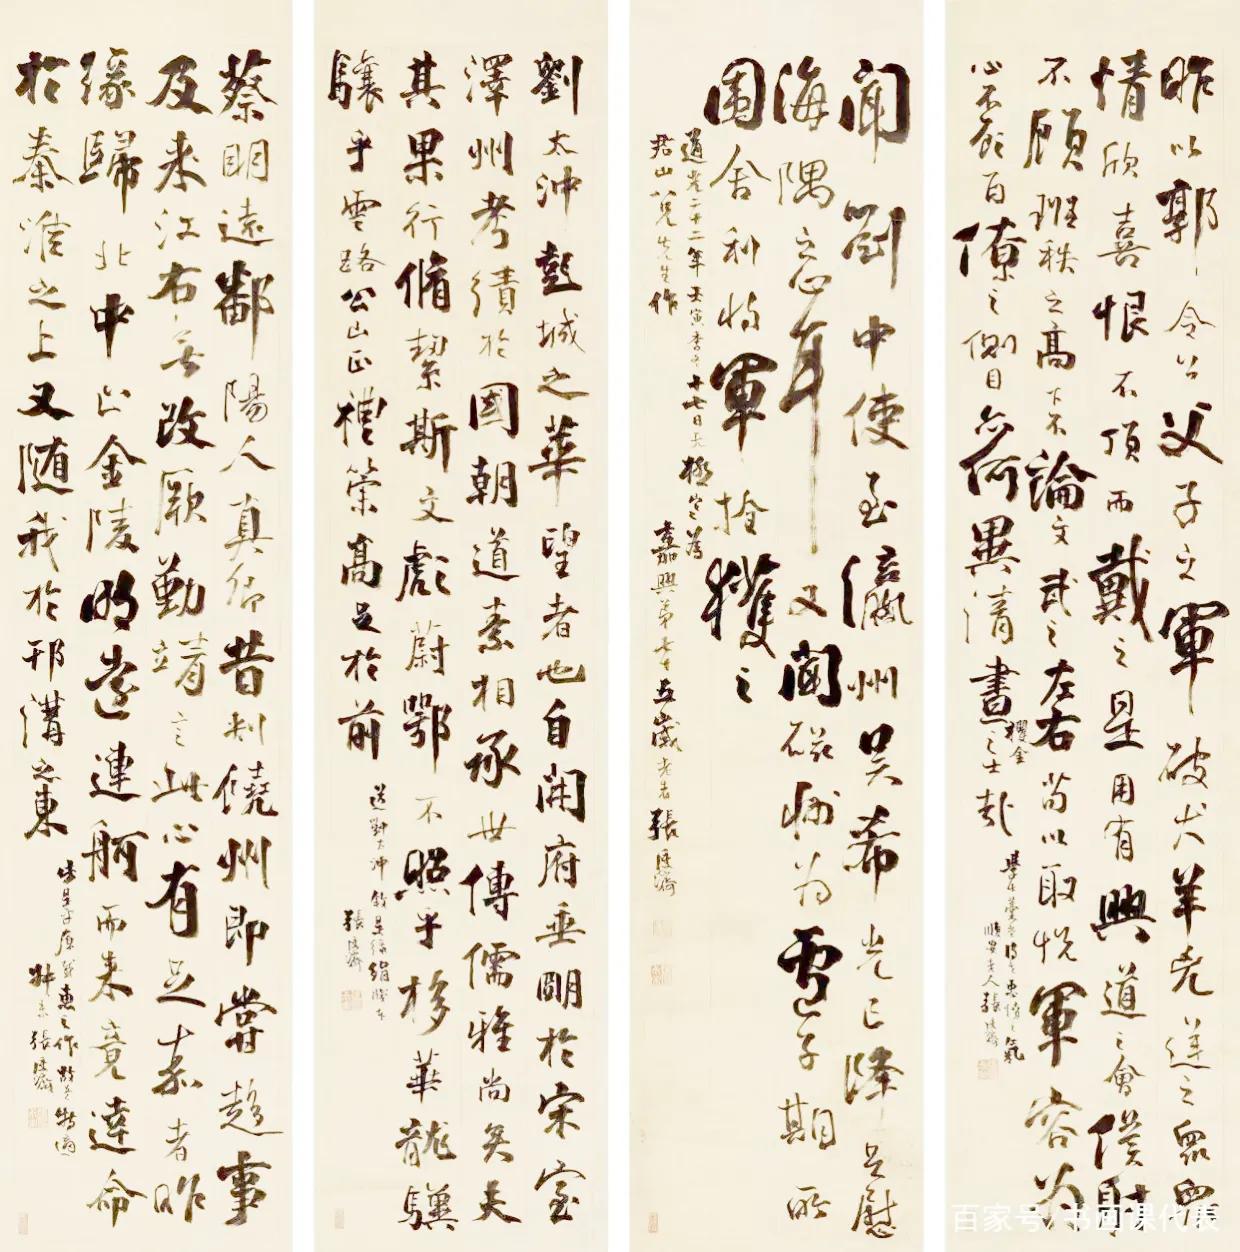 清朝书法家张廷济书法作品欣赏